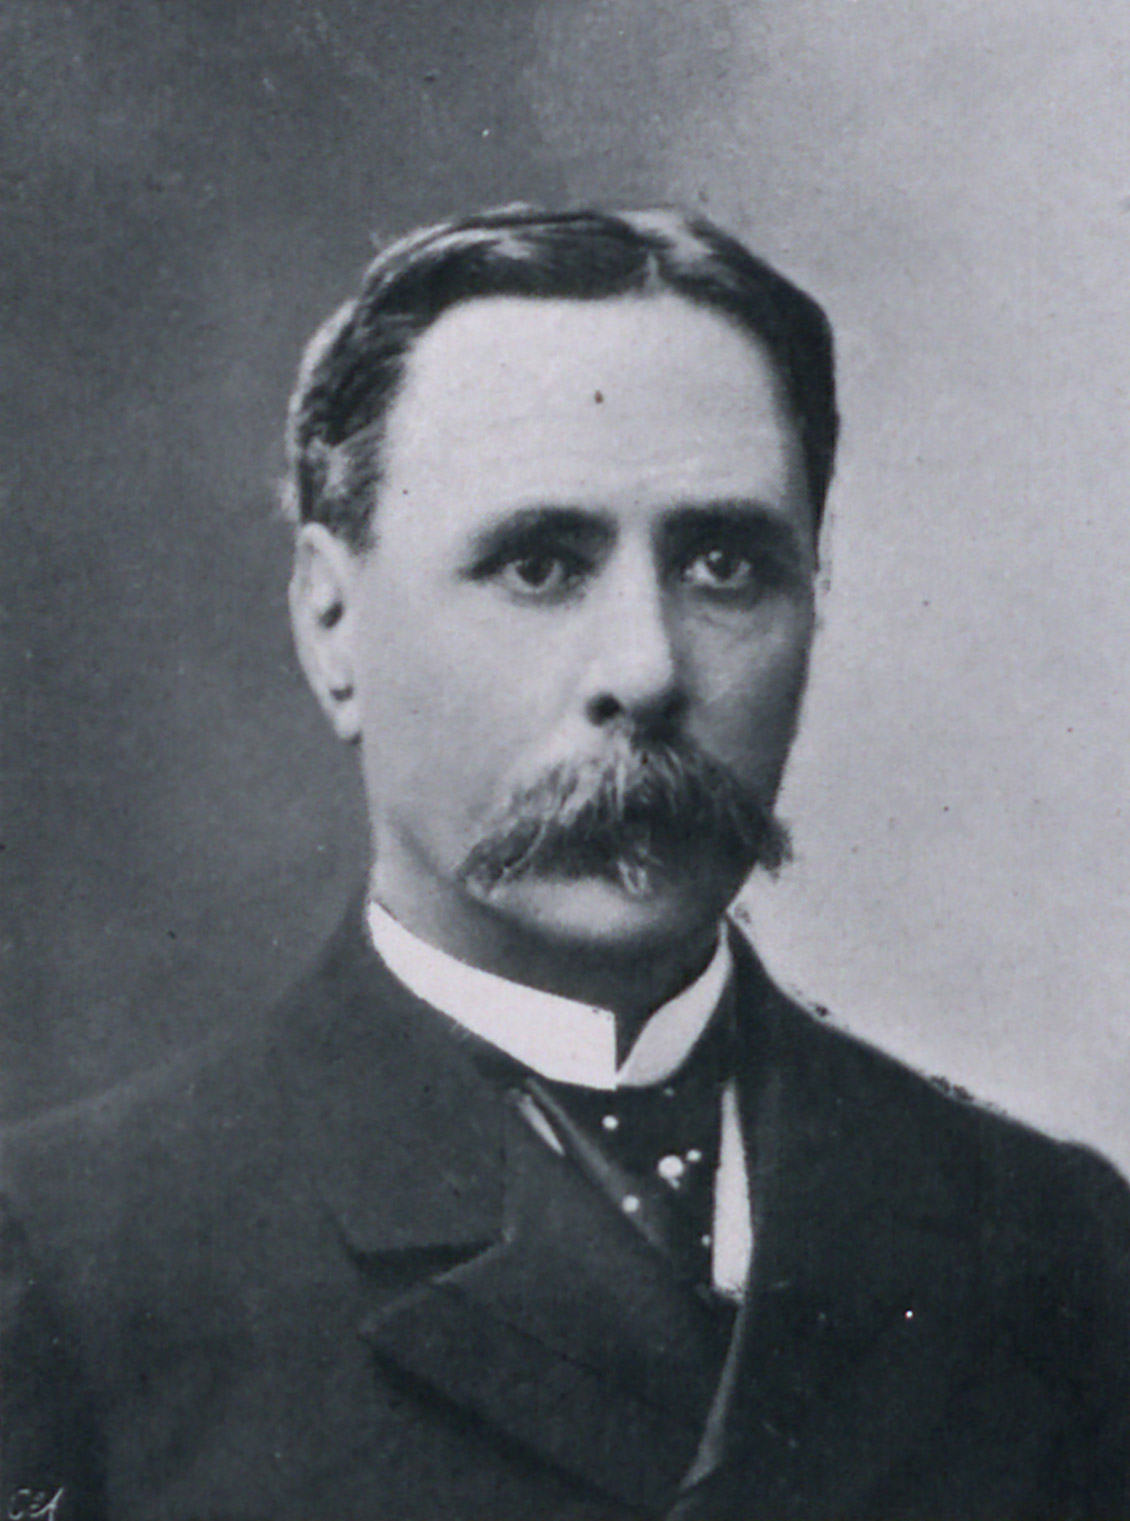 Portrait de Ludovic Trarieux in Les défenseurs de la justice : affaire Dreyfus, 1899